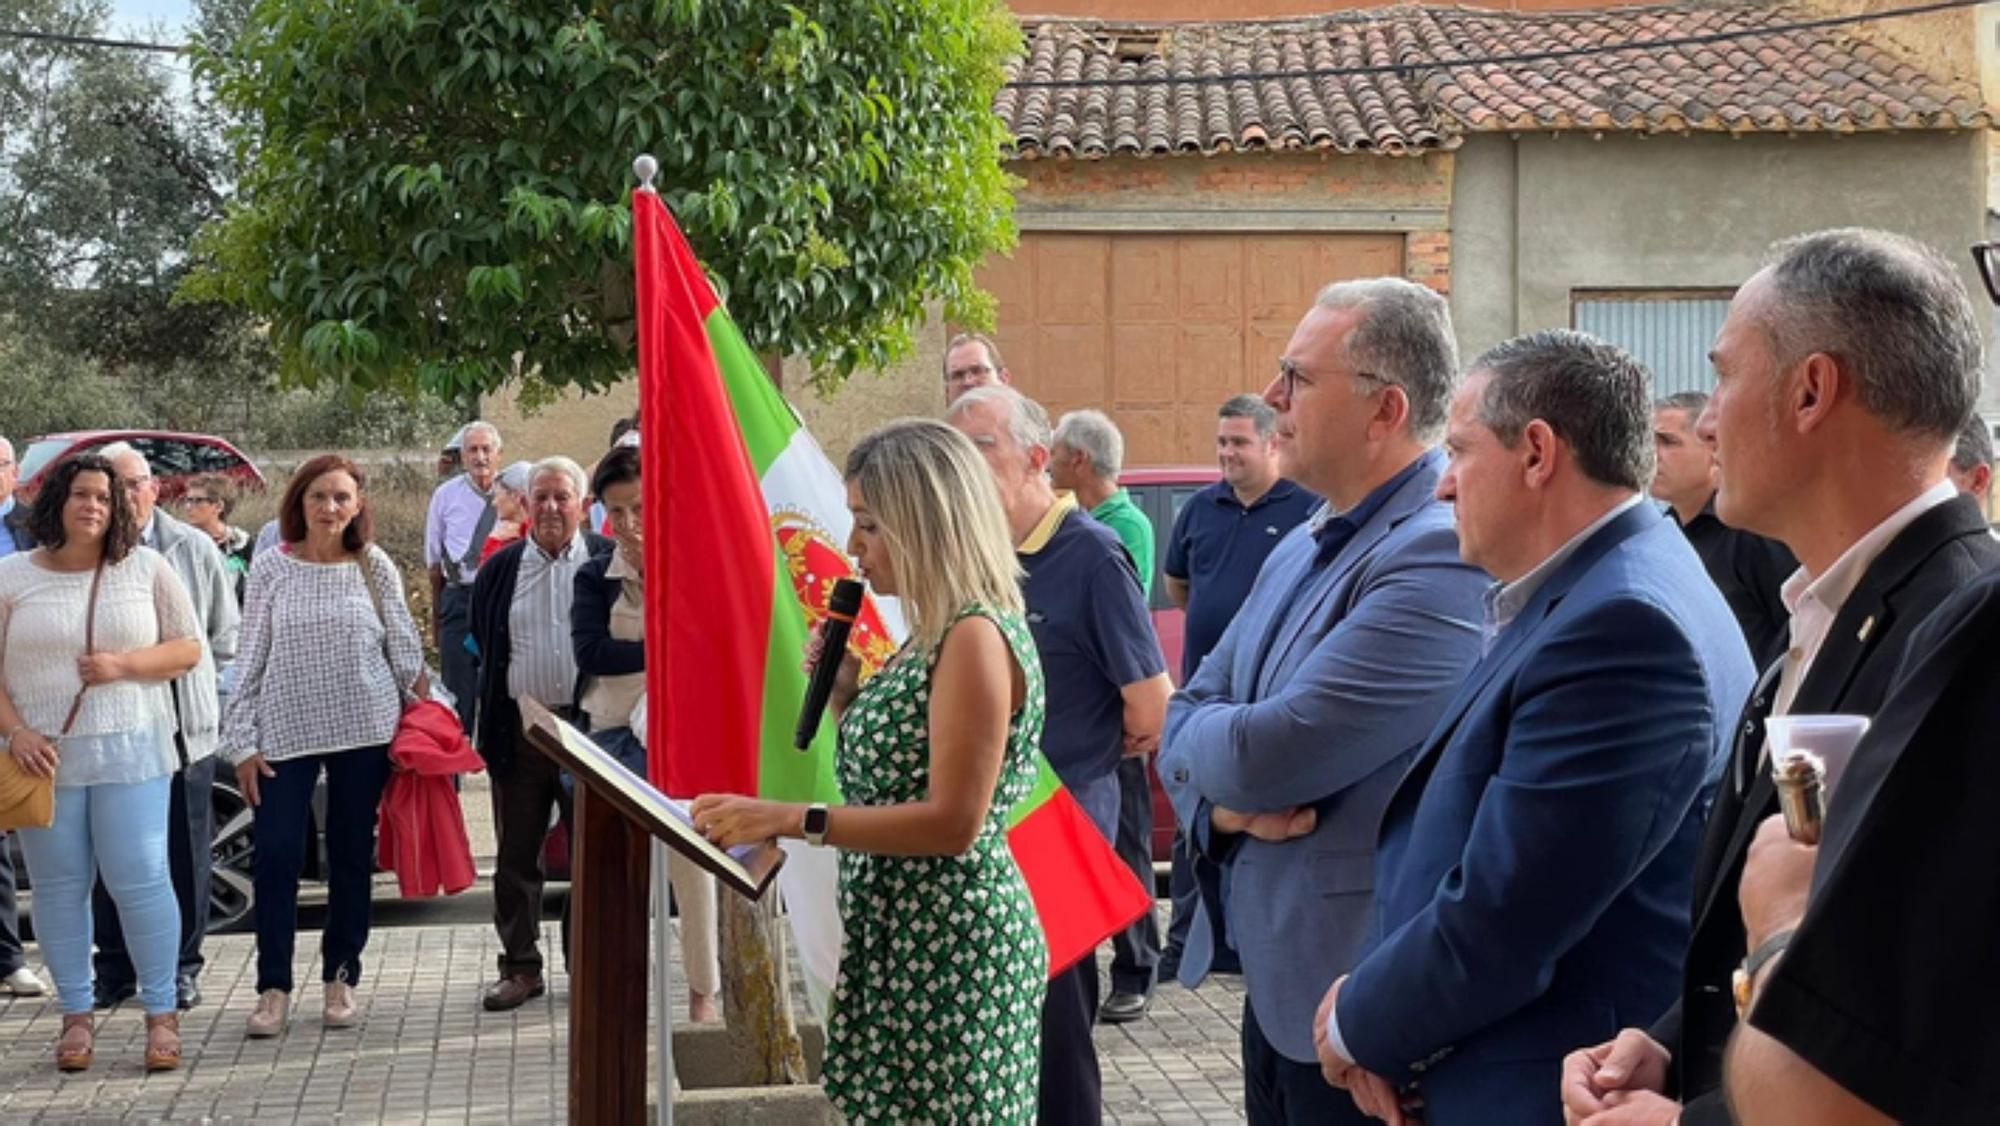 Presentación del escudo y bandera nuevos en Calzadilla de Tera.